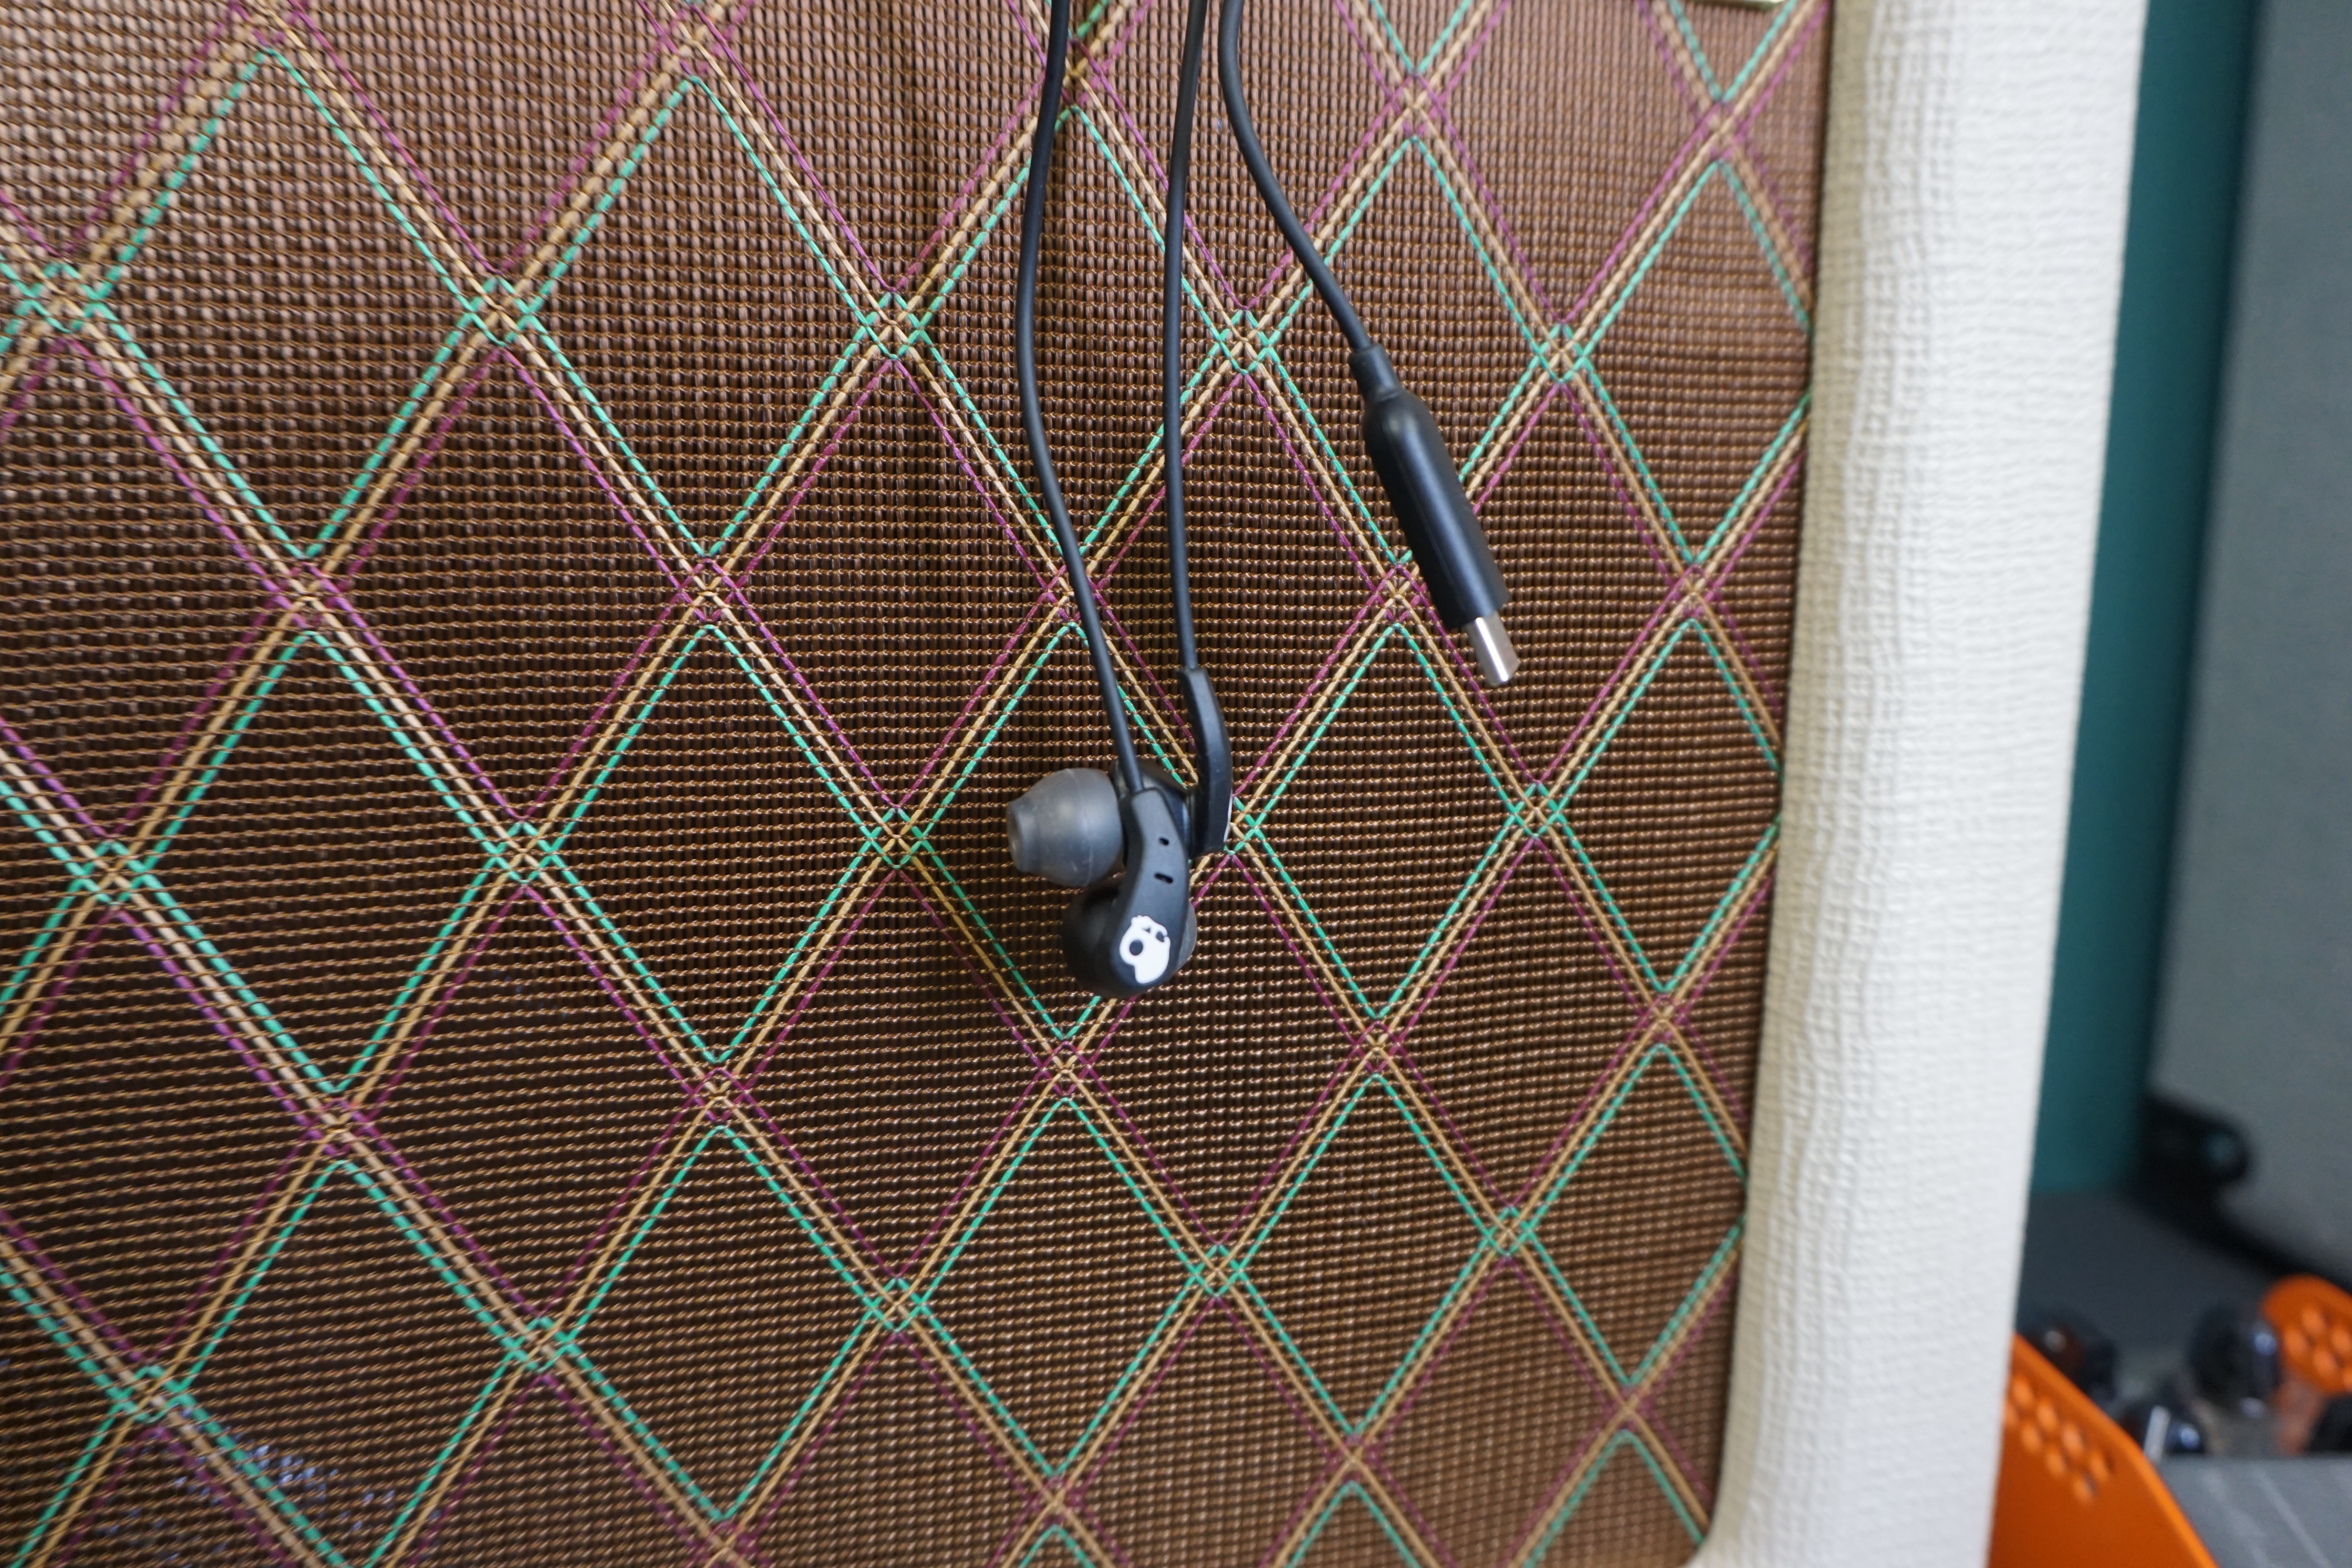 Skullcandy Set USB-C earbuds against guitar amp